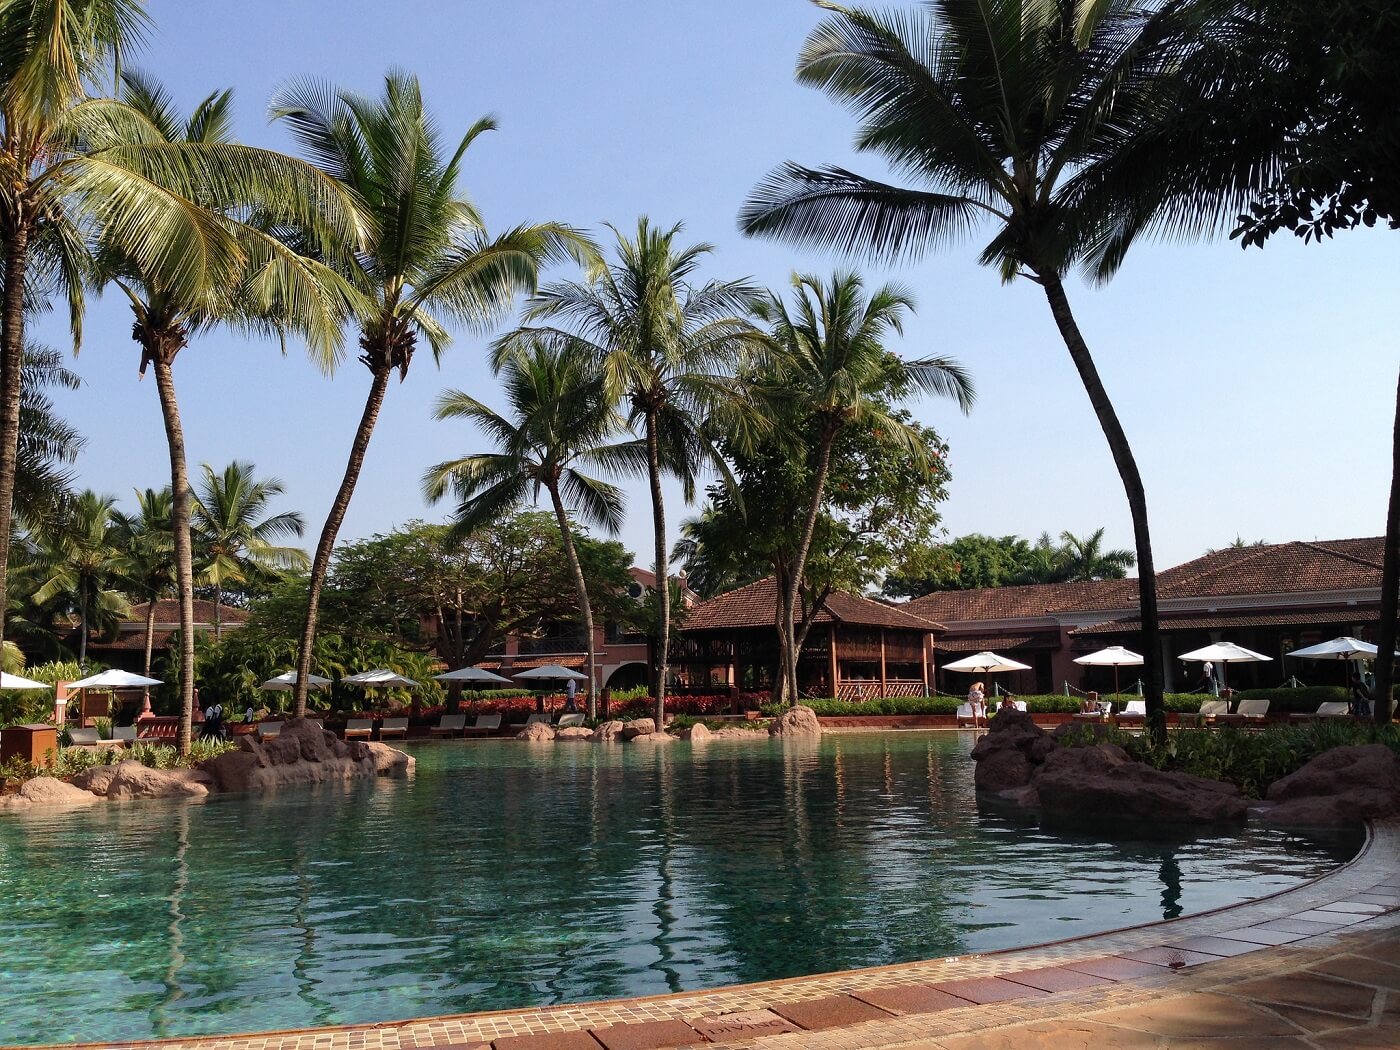 Park Hyatt Resort Pool, Goa